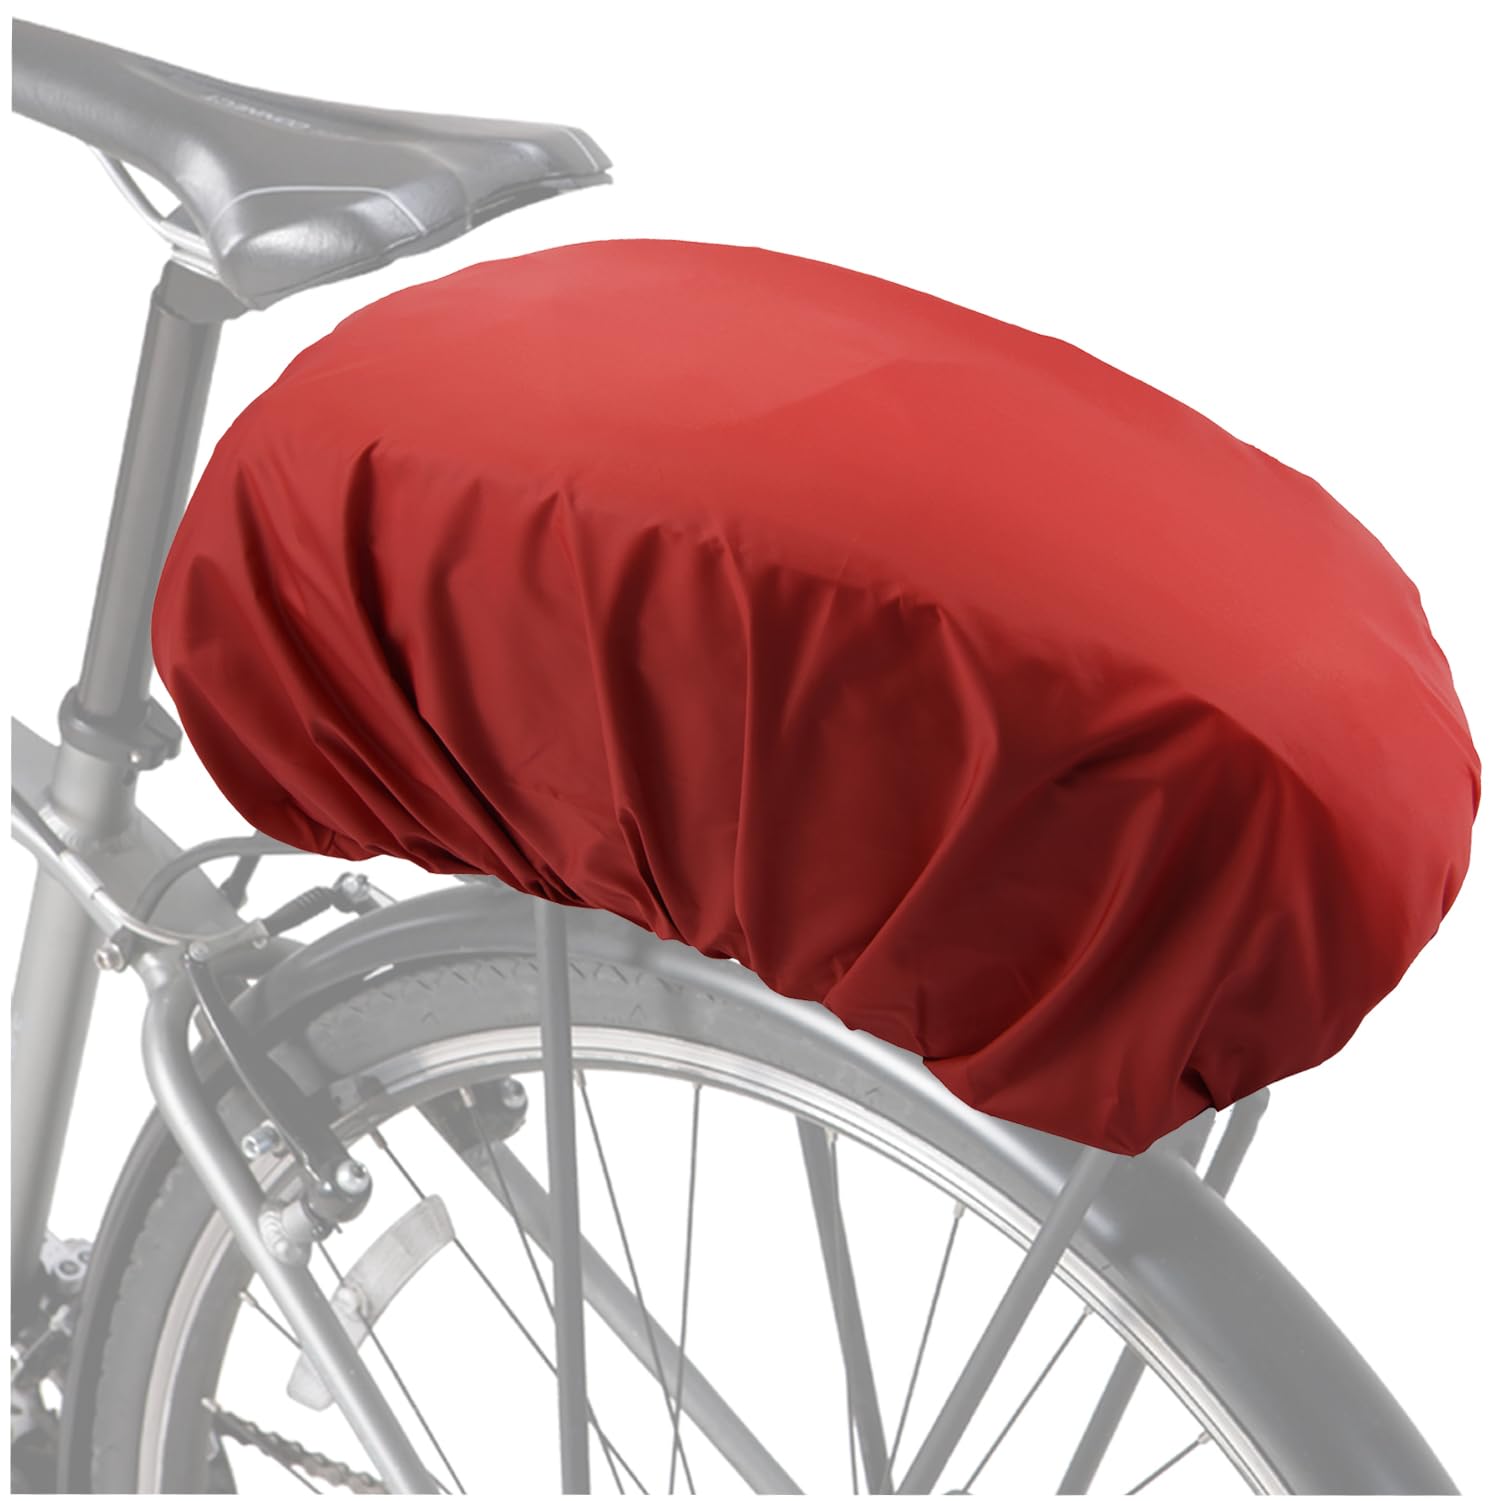 VAOLOAV 5L to 20L Regenschutz für Fahrradkorb Regenschutz Rot Fahrradkorb Regenschutz Abdeckung Überzug für Fahrradkorb Wasserabweisend Farradtasche Bikebasket Regenhaube Rot von VAOLOAV